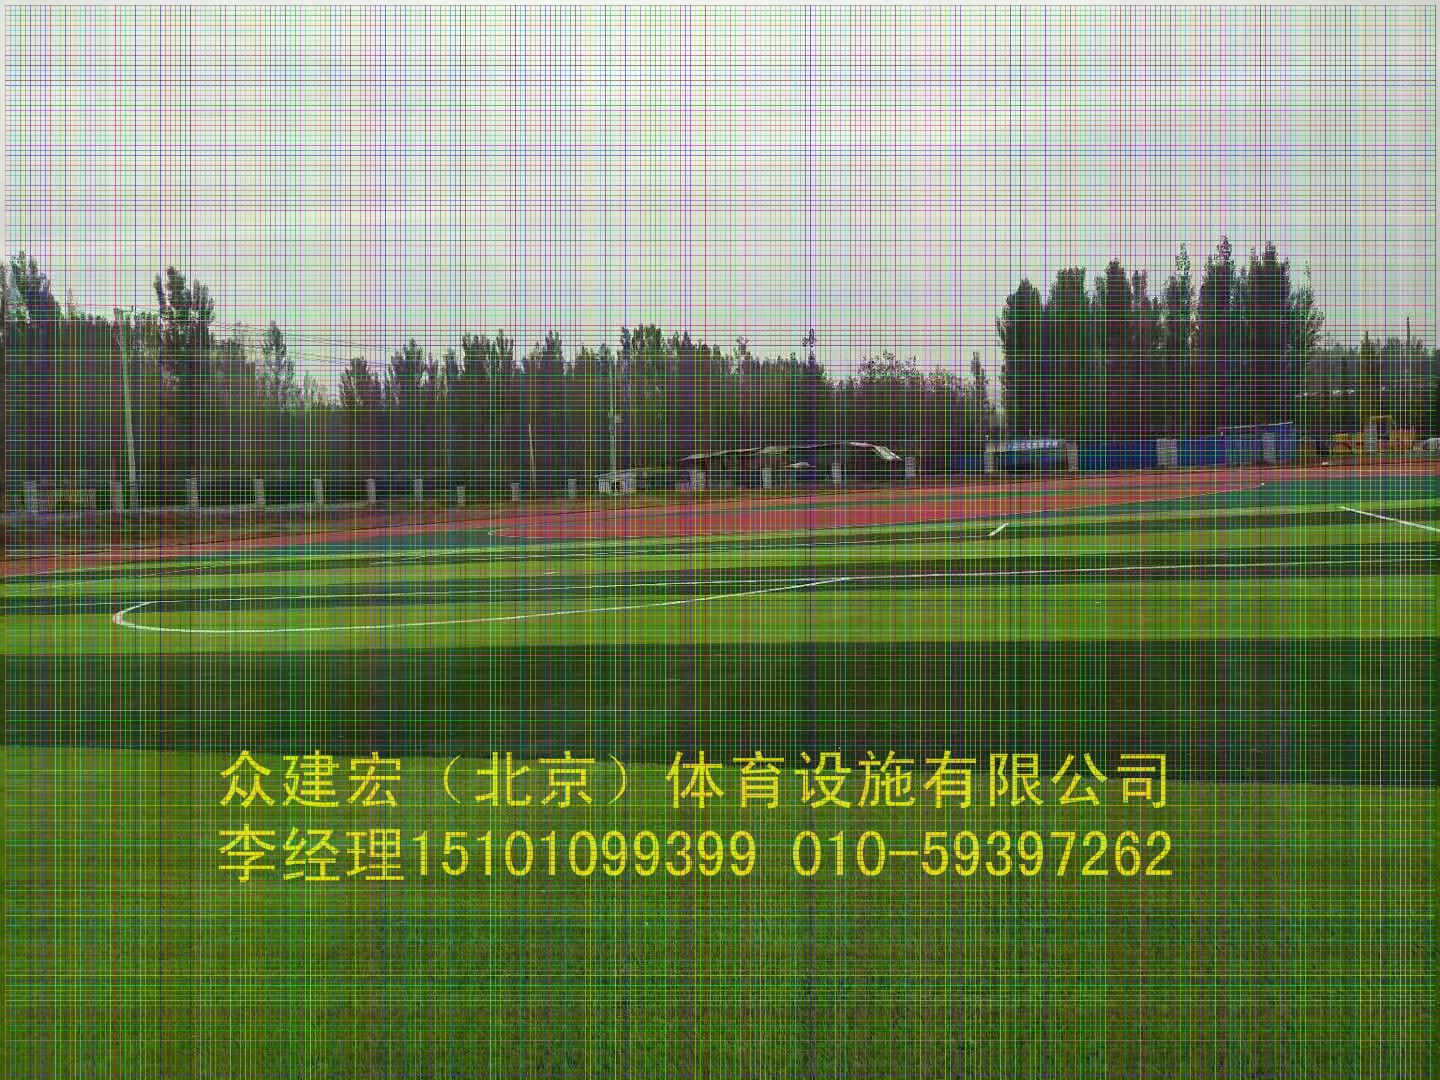 中欧体育北京周边塑胶跑道施工供货厂家(图1)